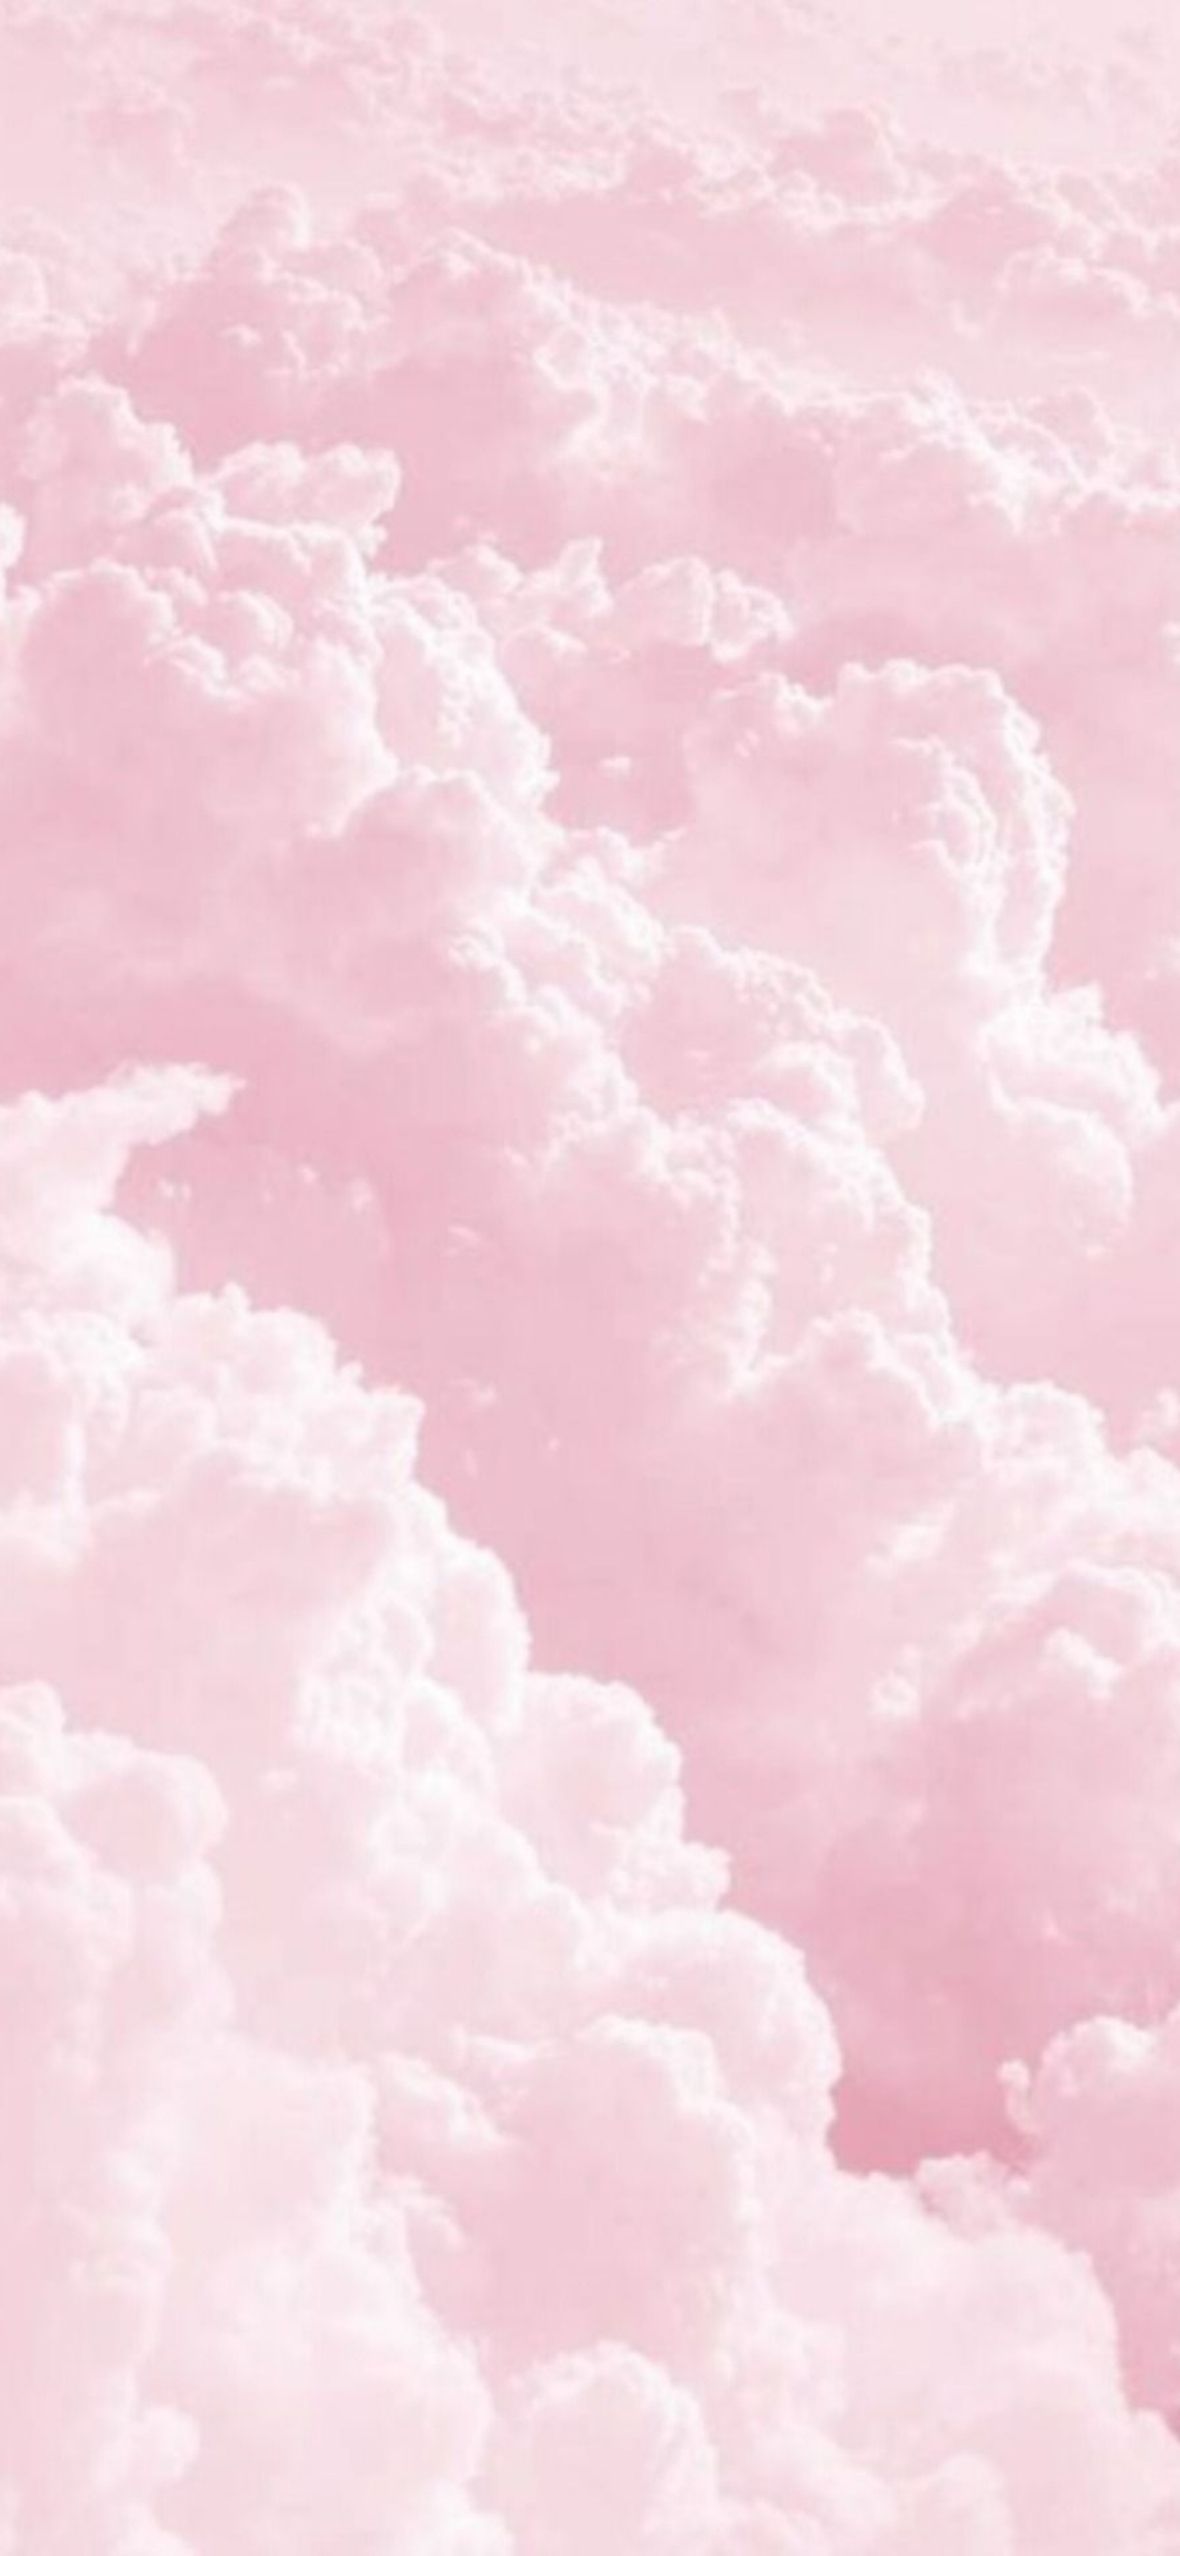 Best Light Pink iPhone Wallpaper [ HQ ]